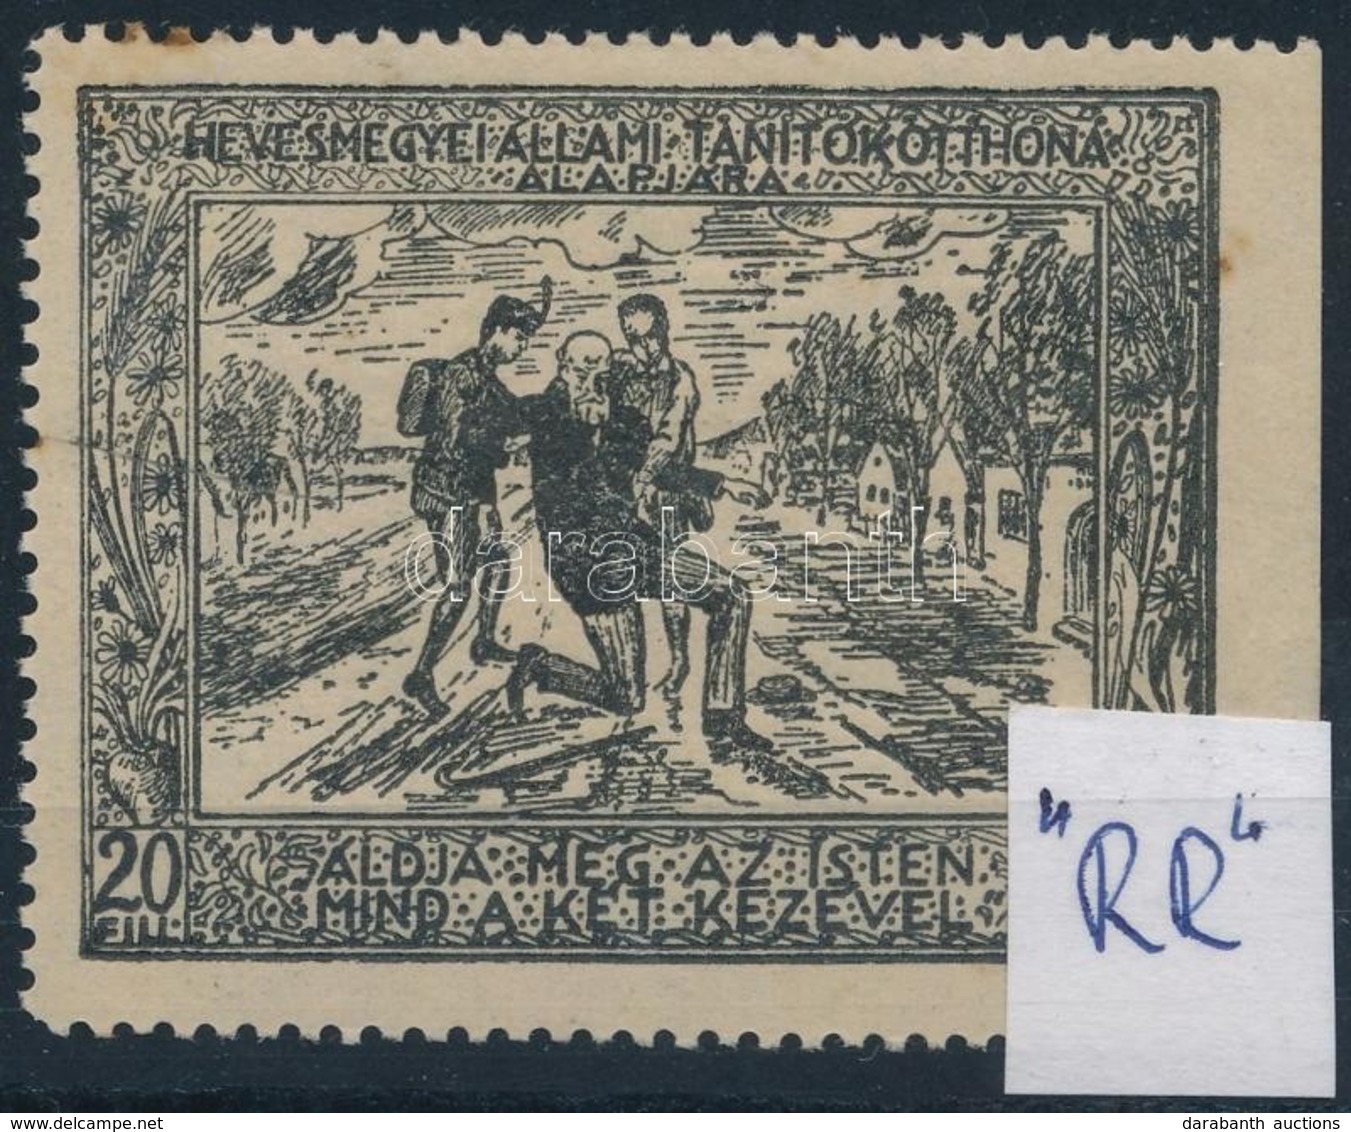 1910 Heves Megyei állami Tanítók Otthona Alapjára 20f Adománybélyeg ,,RR' - Unclassified